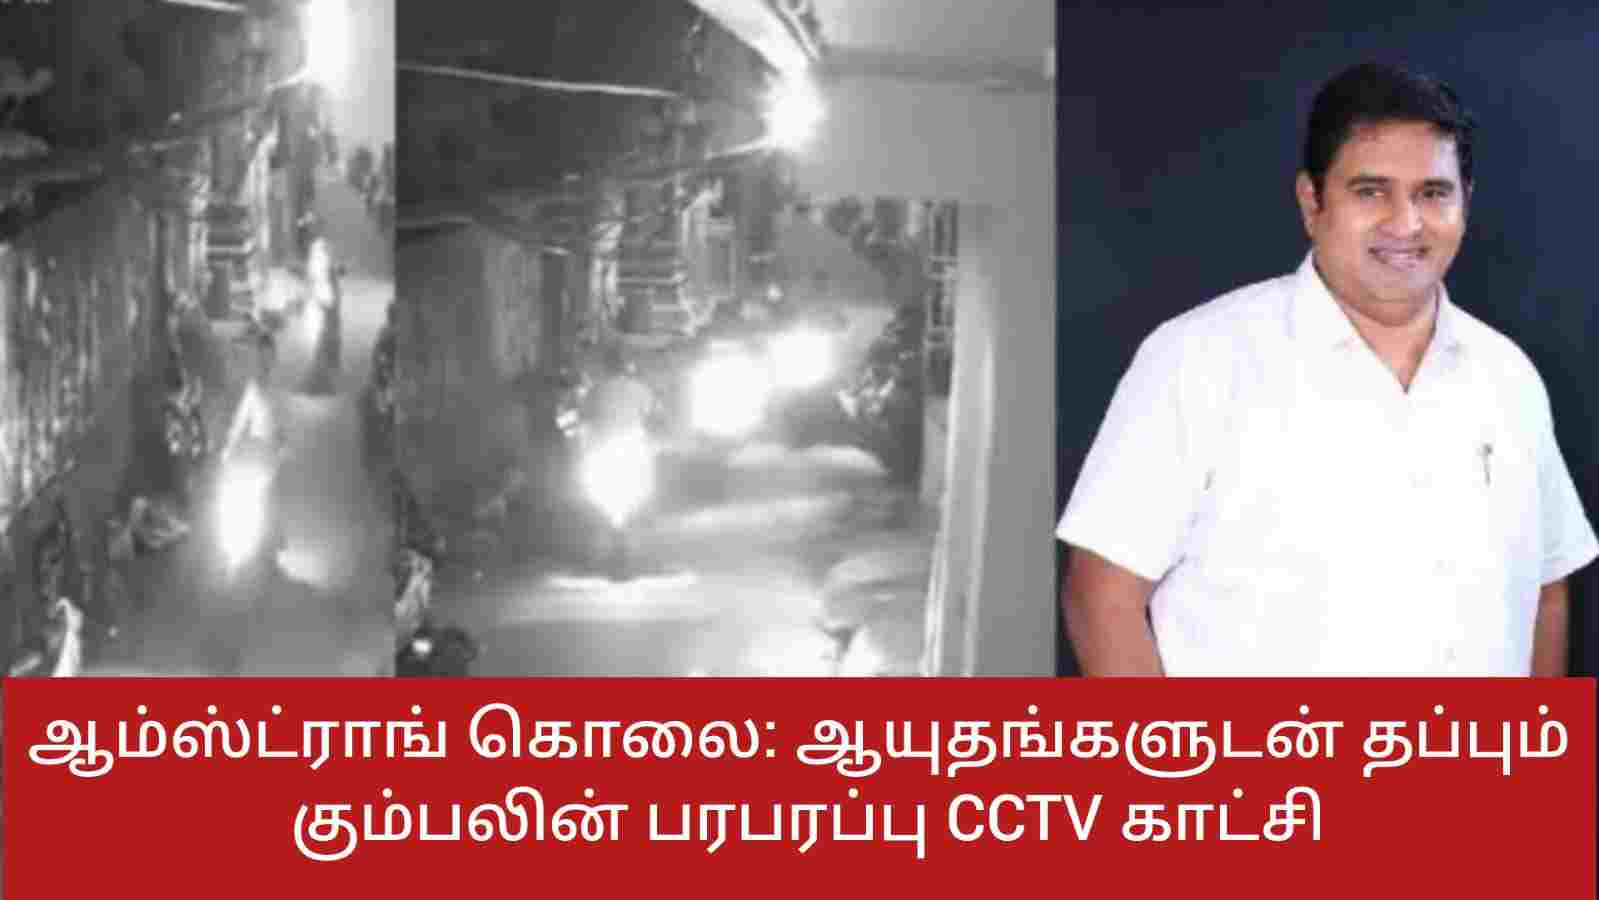 ஆம்ஸ்ட்ராங் கொலை: ஆயுதங்களுடன் தப்பும் கும்பலின் பரபரப்பு CCTV காட்சி